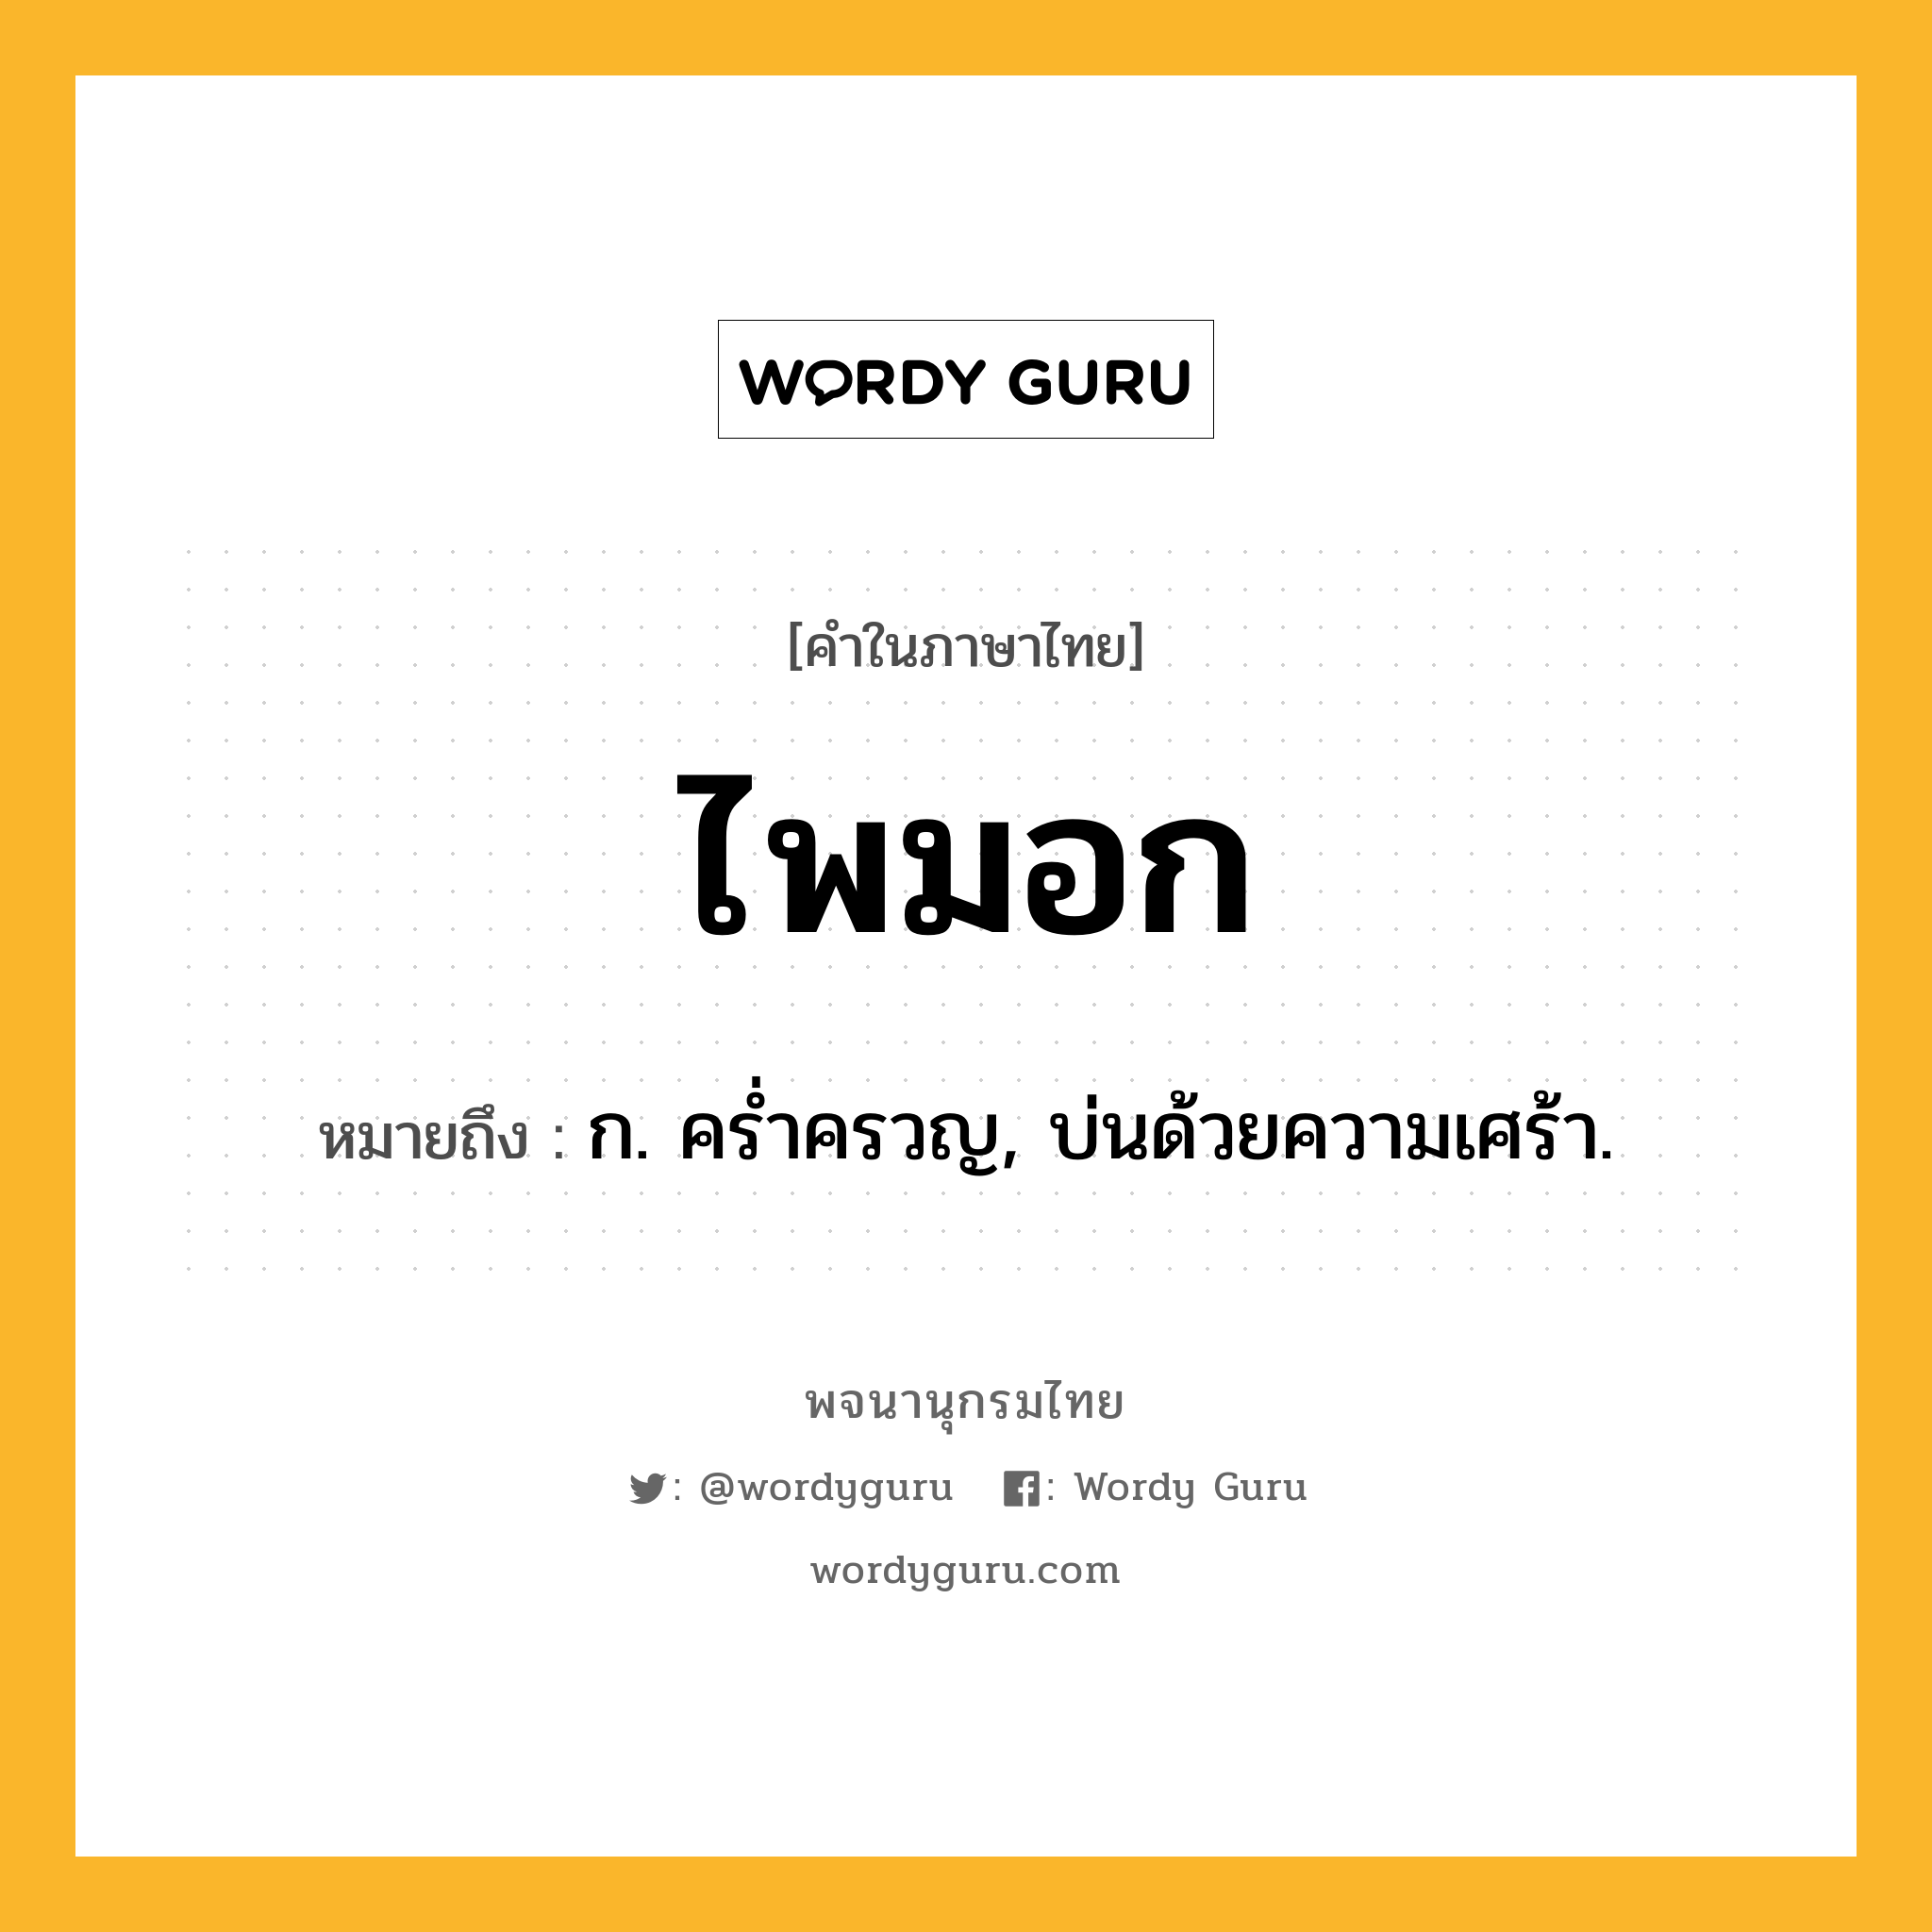 ไพมอก ความหมาย หมายถึงอะไร?, คำในภาษาไทย ไพมอก หมายถึง ก. ครํ่าครวญ, บ่นด้วยความเศร้า.